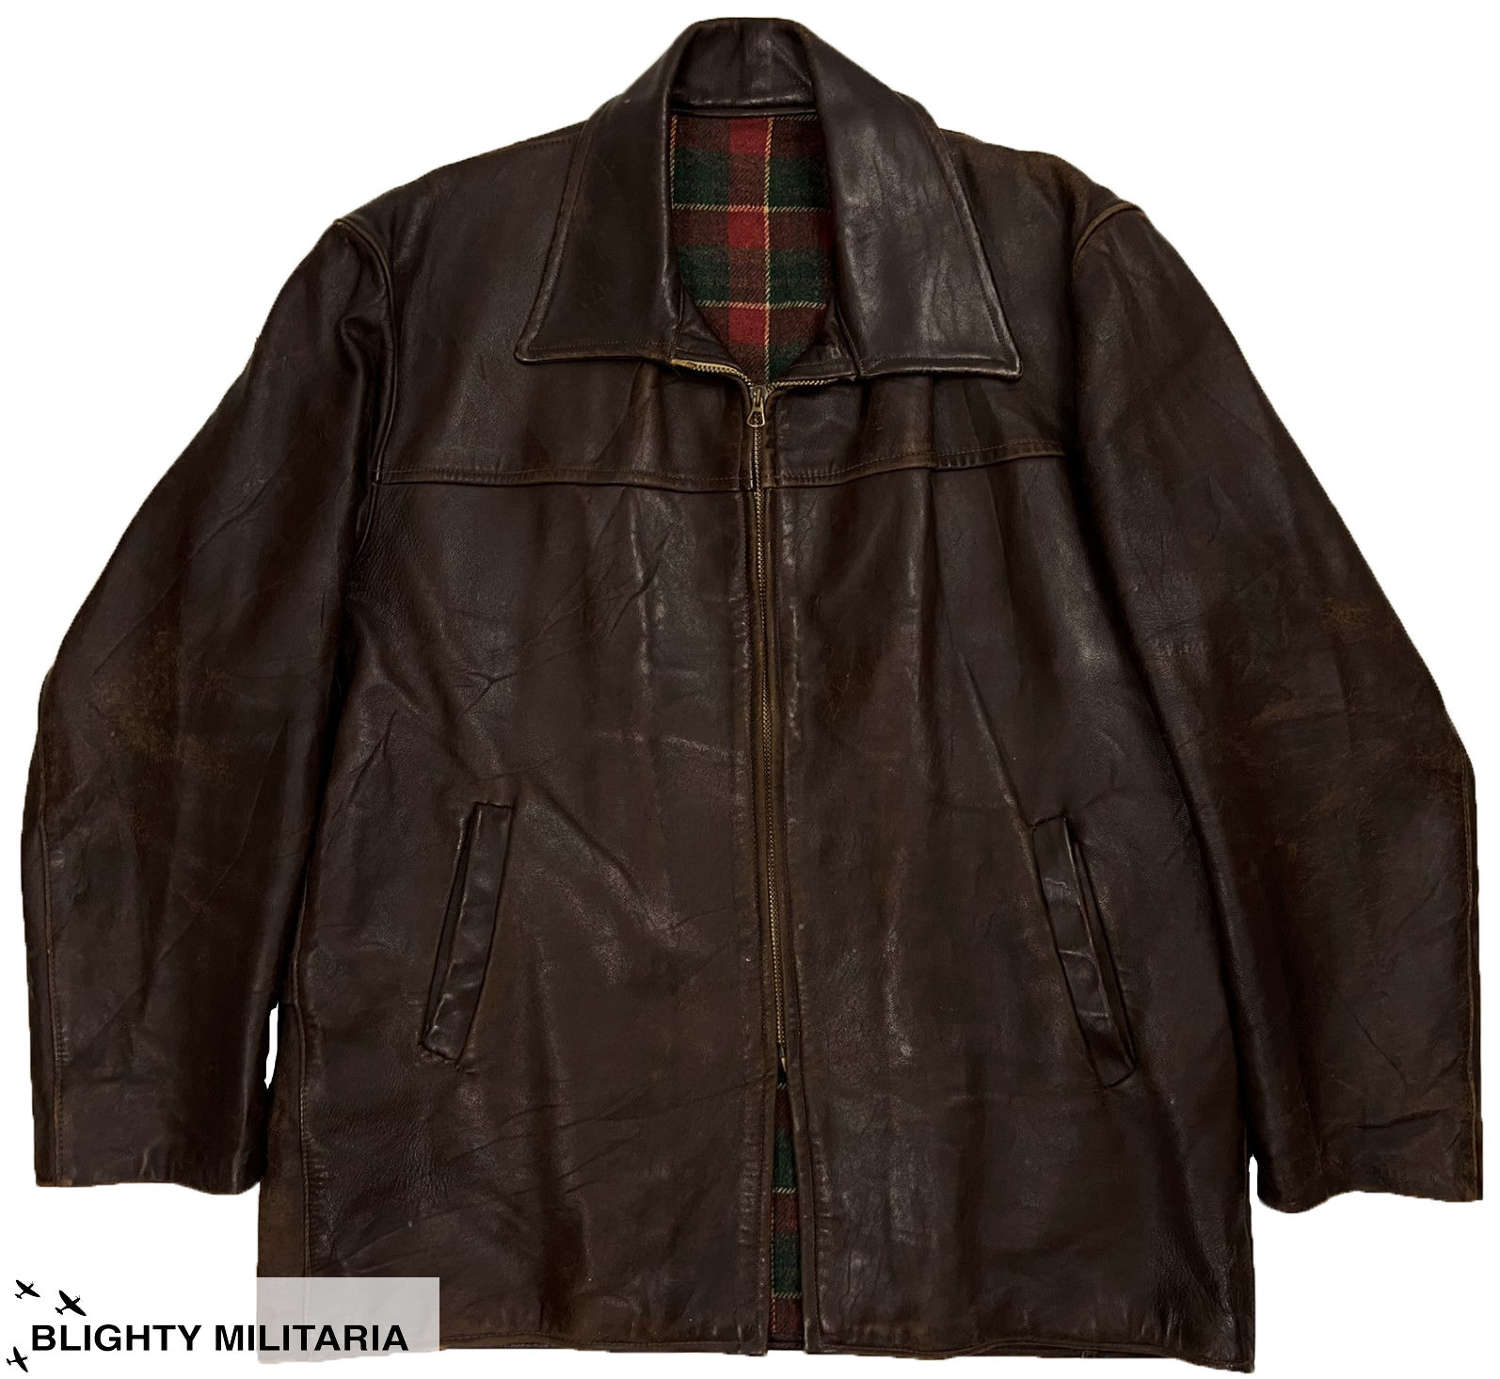 Original 1940s Belgium Leather Jacket - Large Size 48